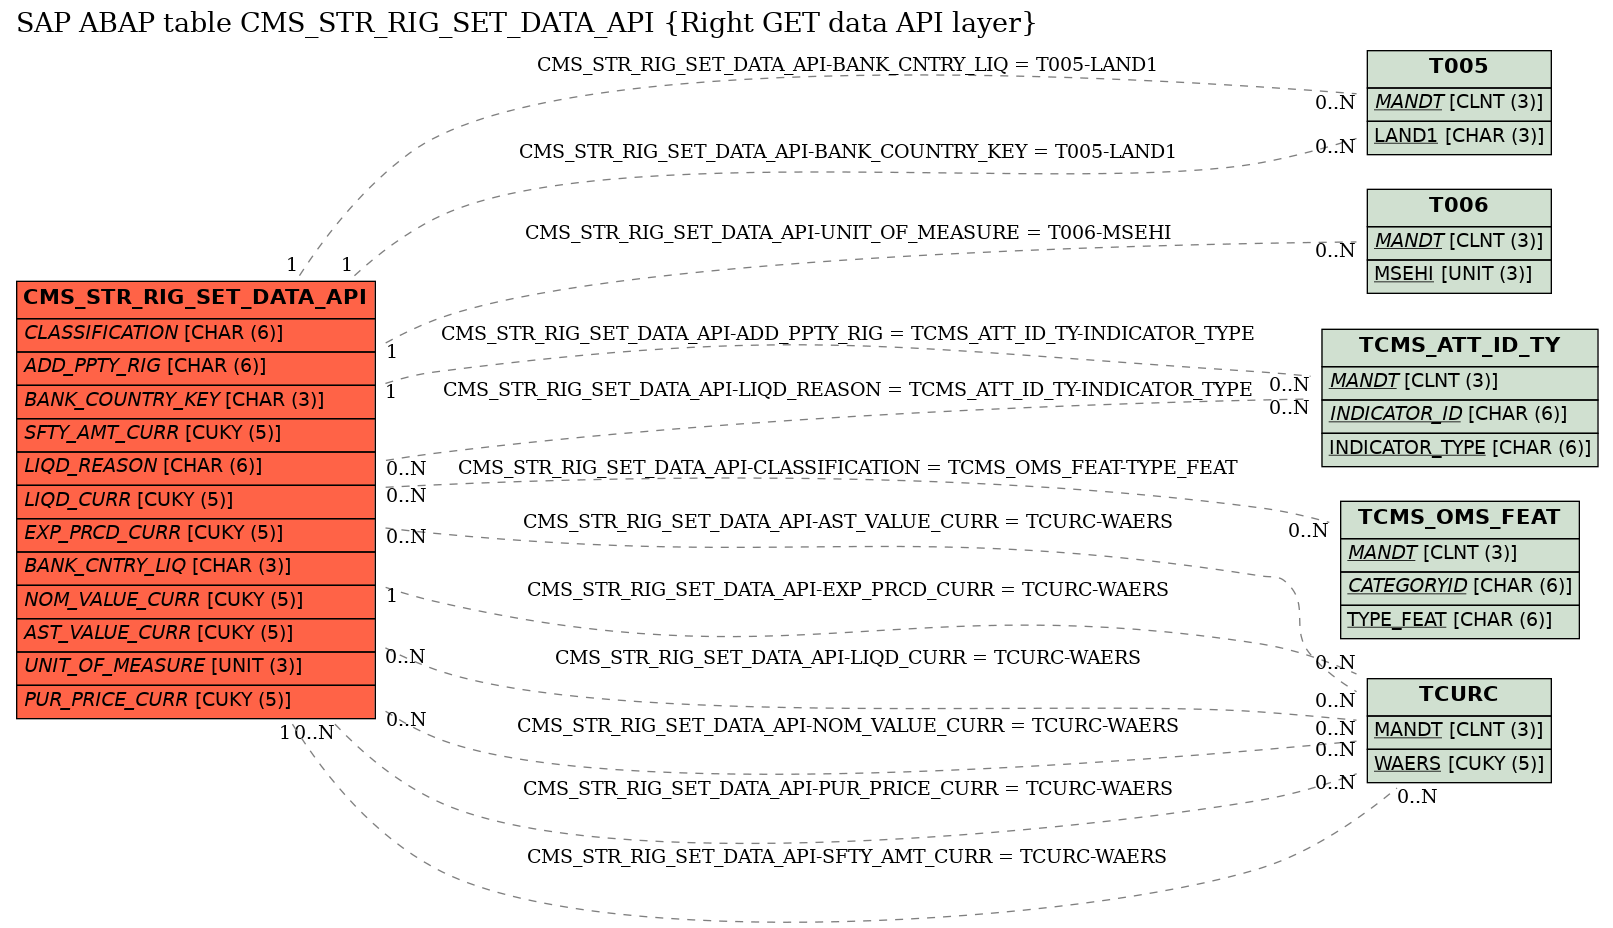 E-R Diagram for table CMS_STR_RIG_SET_DATA_API (Right GET data API layer)